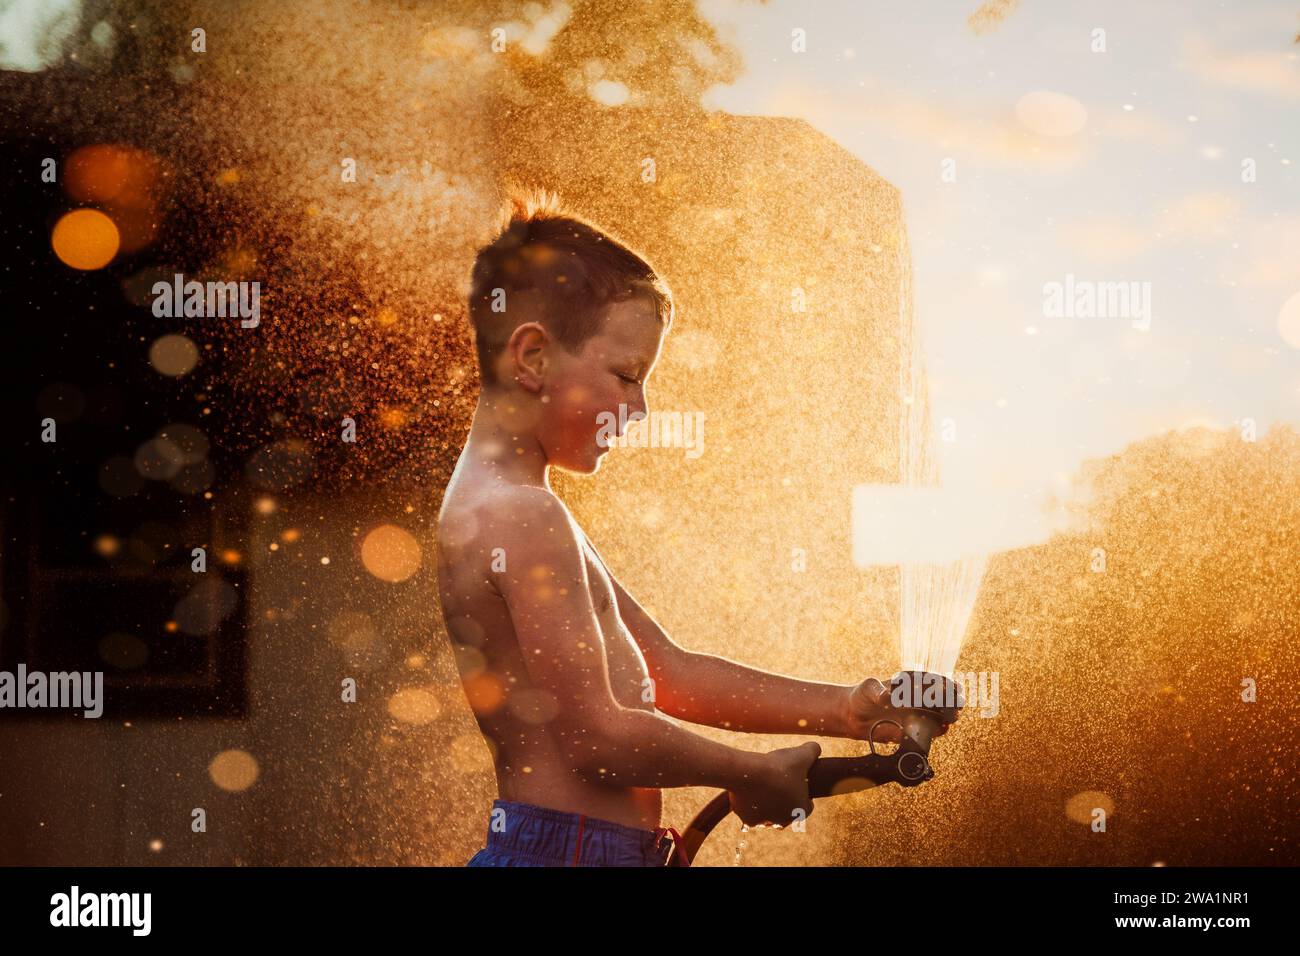 Garçon jouant dans l'eau devant la lumière dorée Banque D'Images